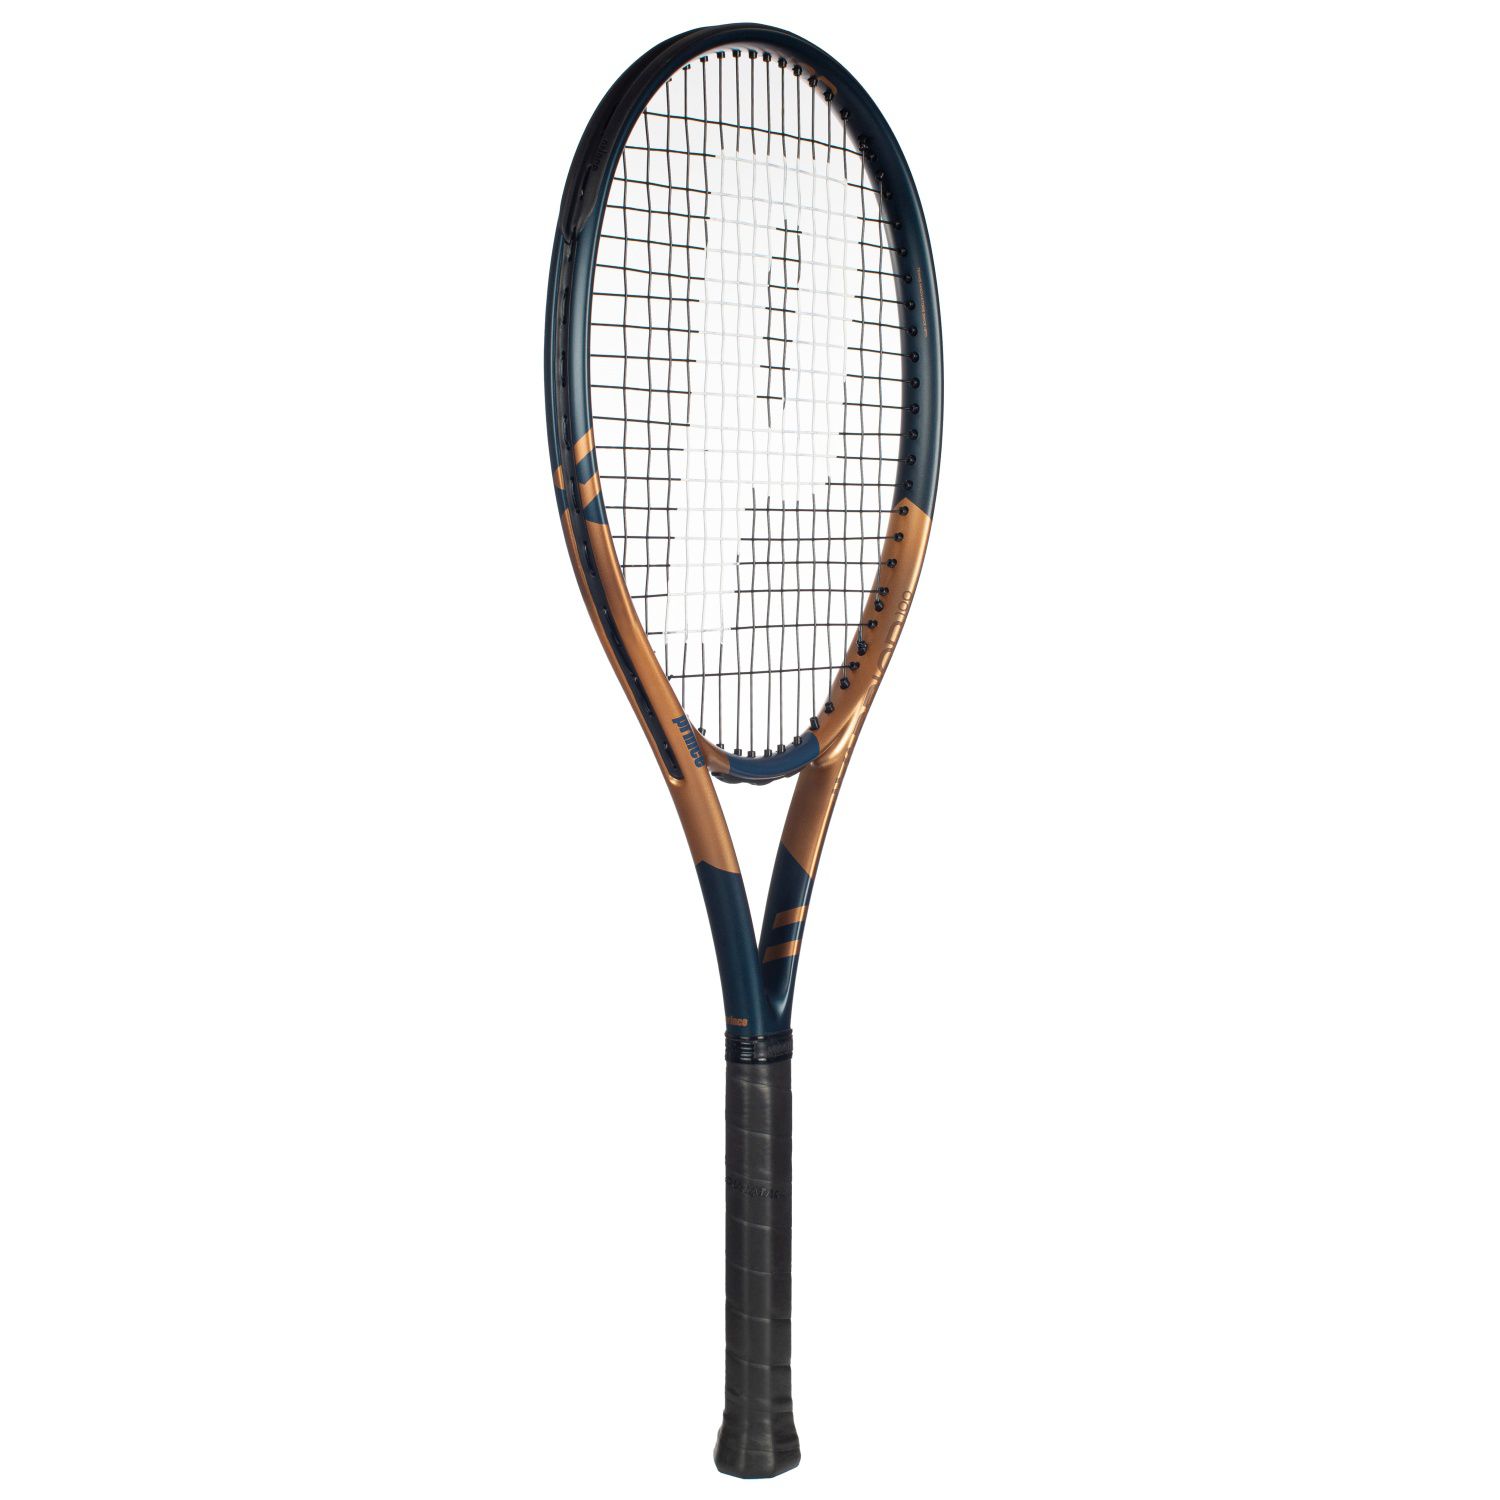 Raqueta De Tenis Prince Warrior 100 300 G (encordada Y Con Funda) - negro - 